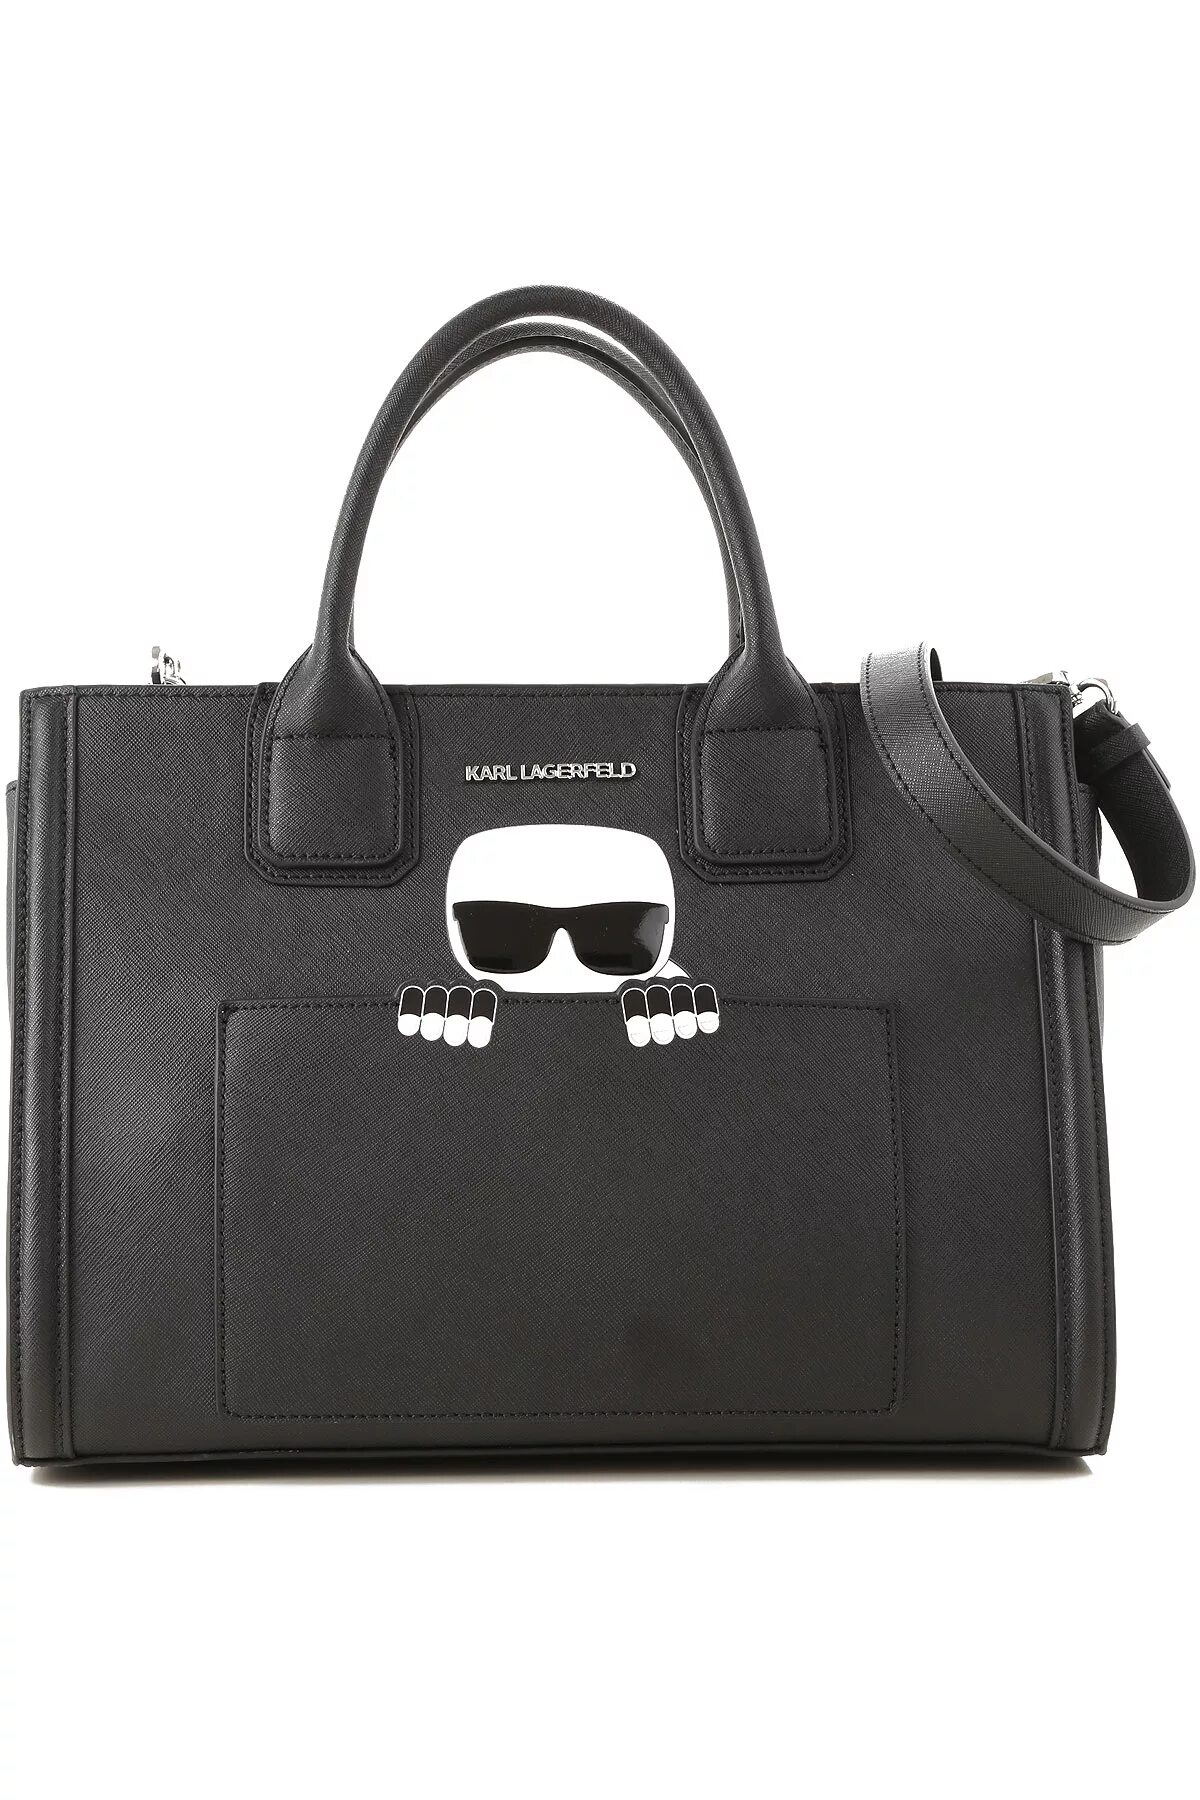 Купить сумку лагерфельд оригинал. Karl Lagerfeld сумки женские. Сумка Karl Lagerfeld ikonik черная.